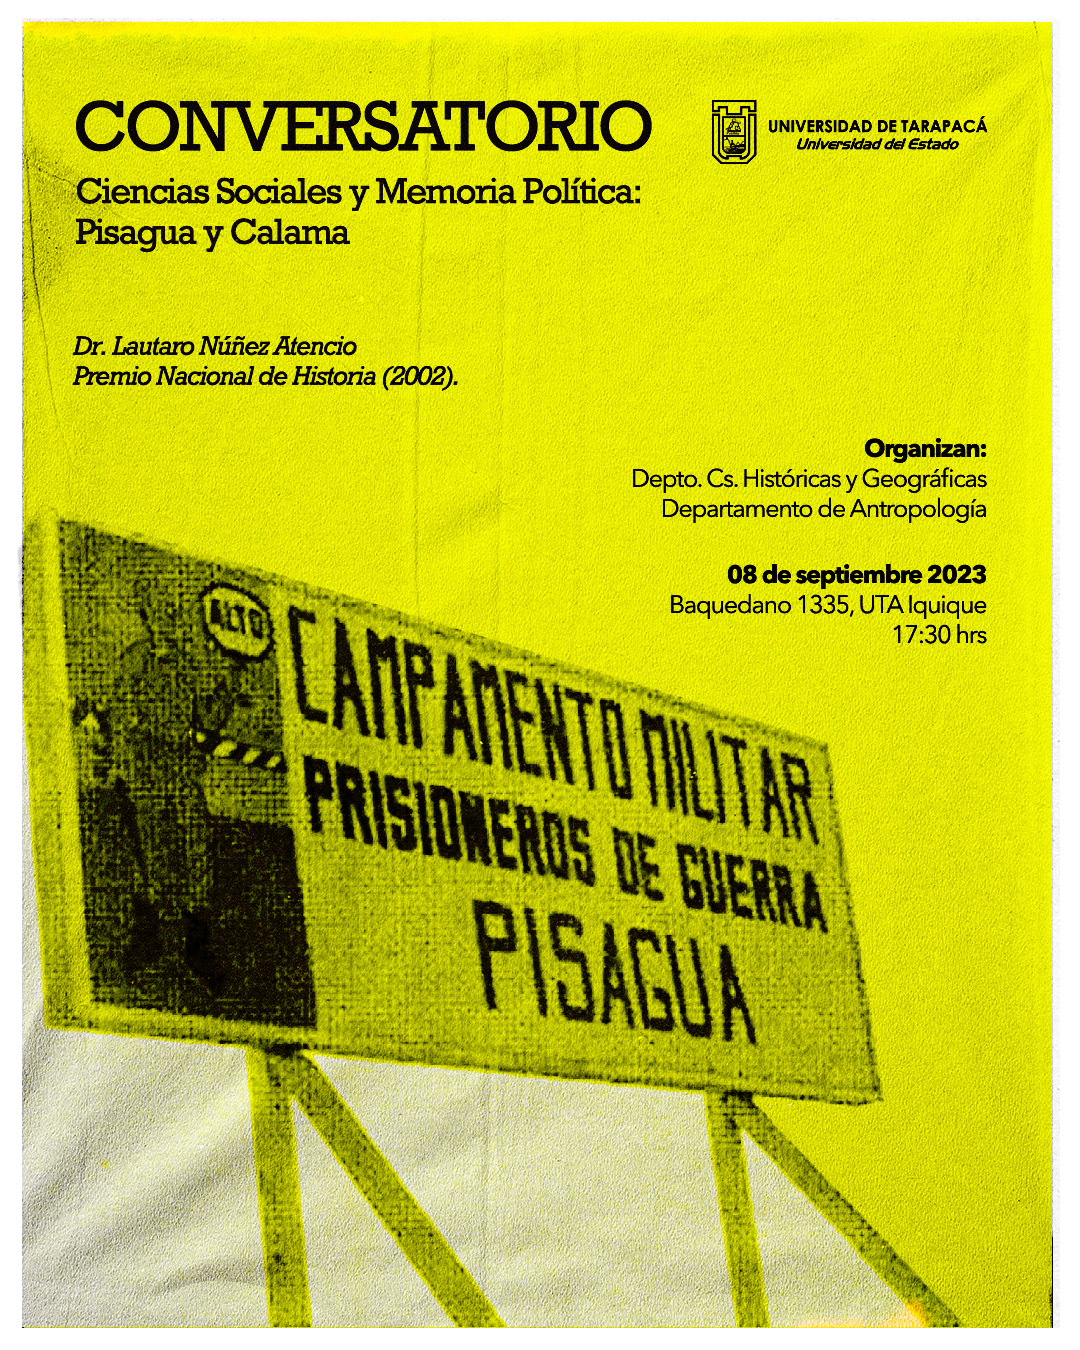 Conversatorio Ciencias Sociales y Memoria Politica Pisagau y Calama